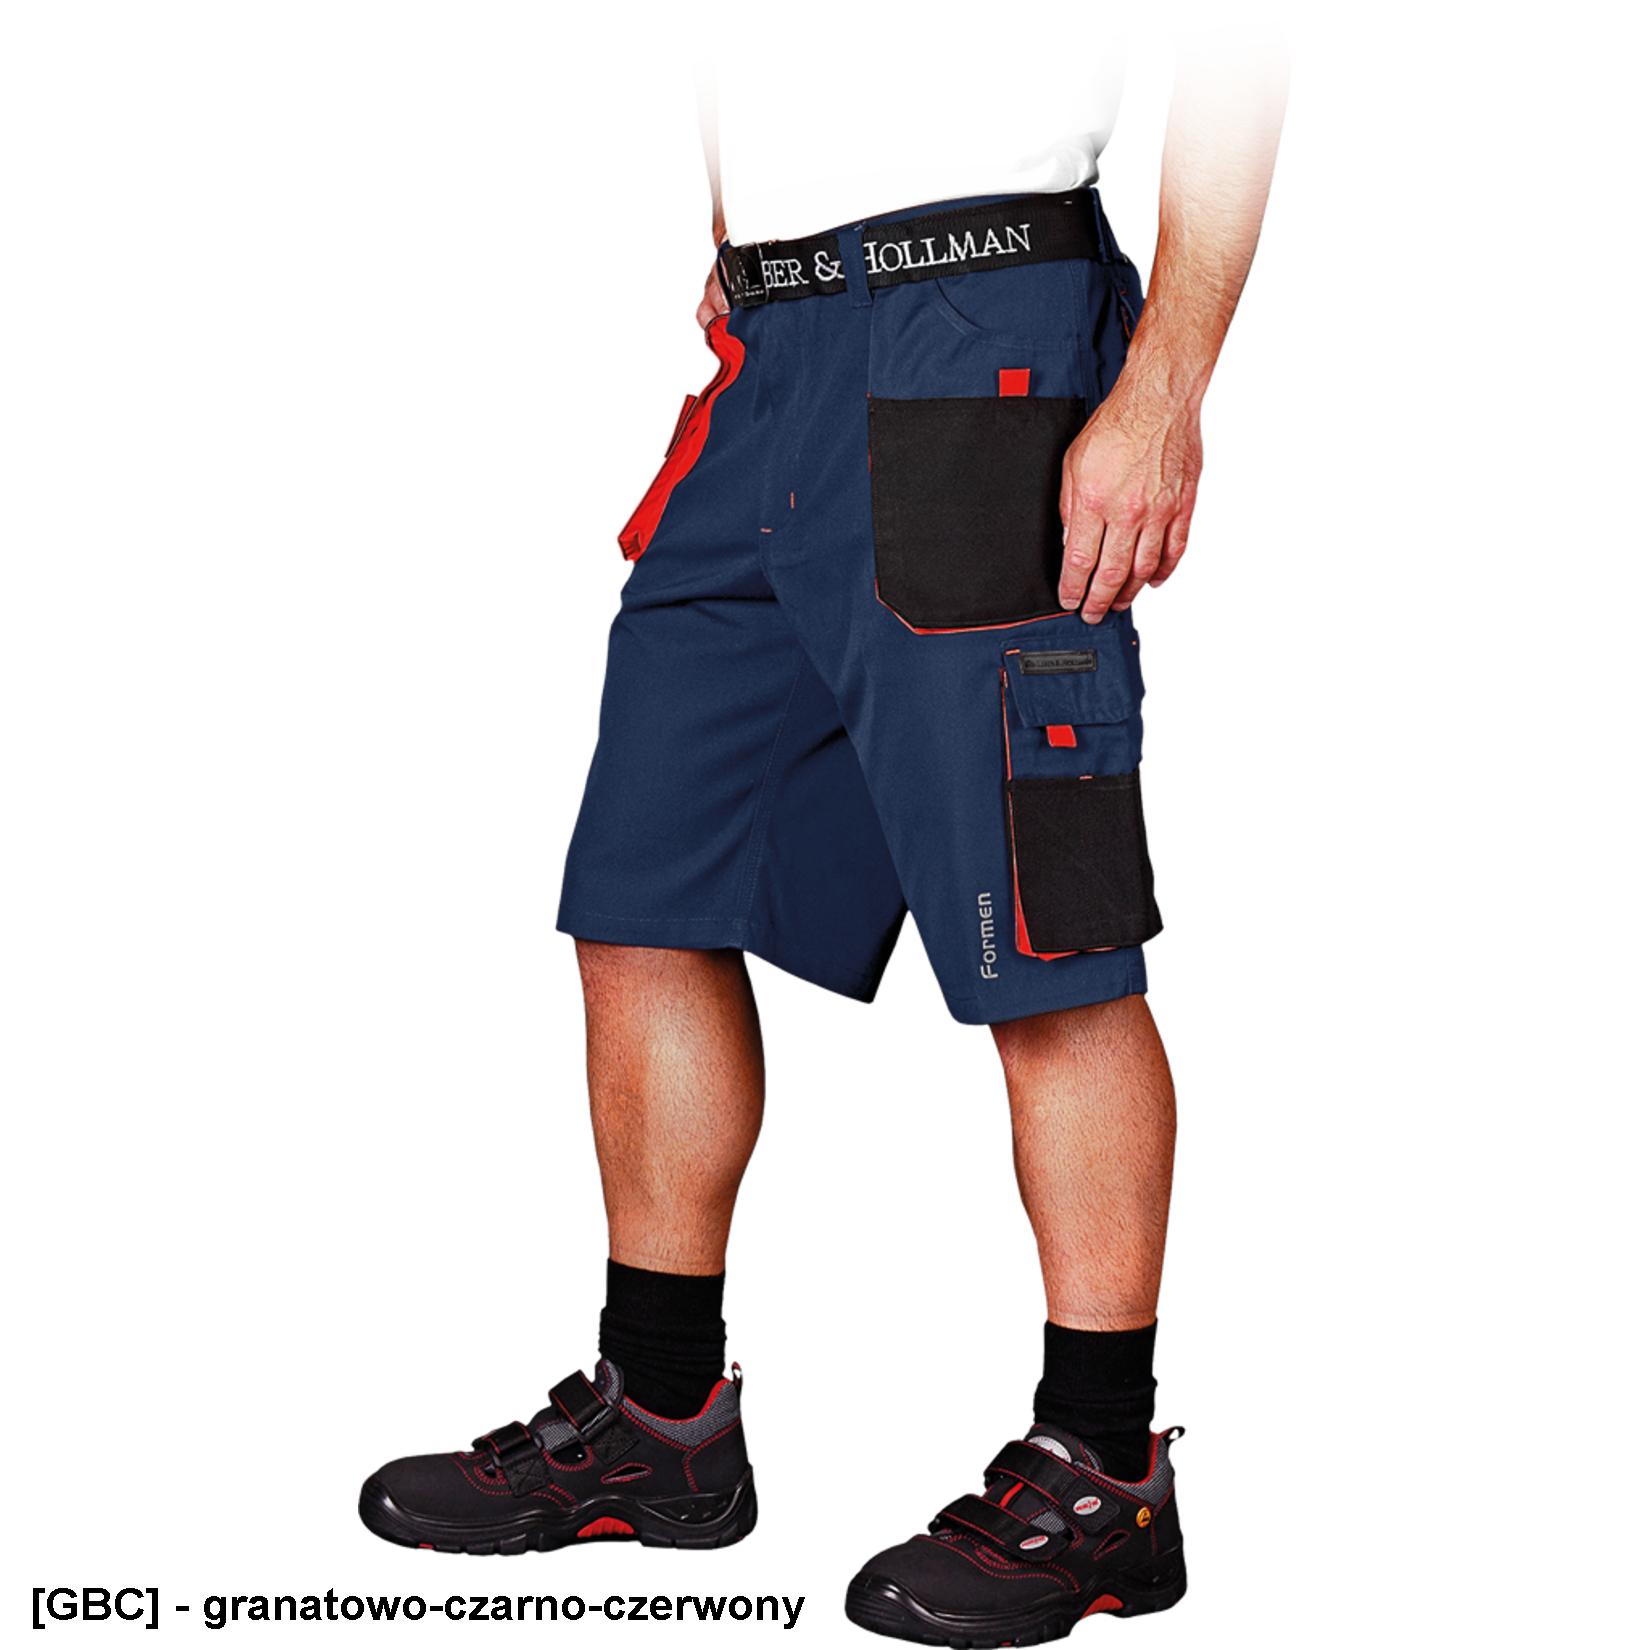 LH-FMN-TS - Spodnie ochronne do pasa FORMEN z krótkimi nogawkami - 13 kolorów - S-3XL